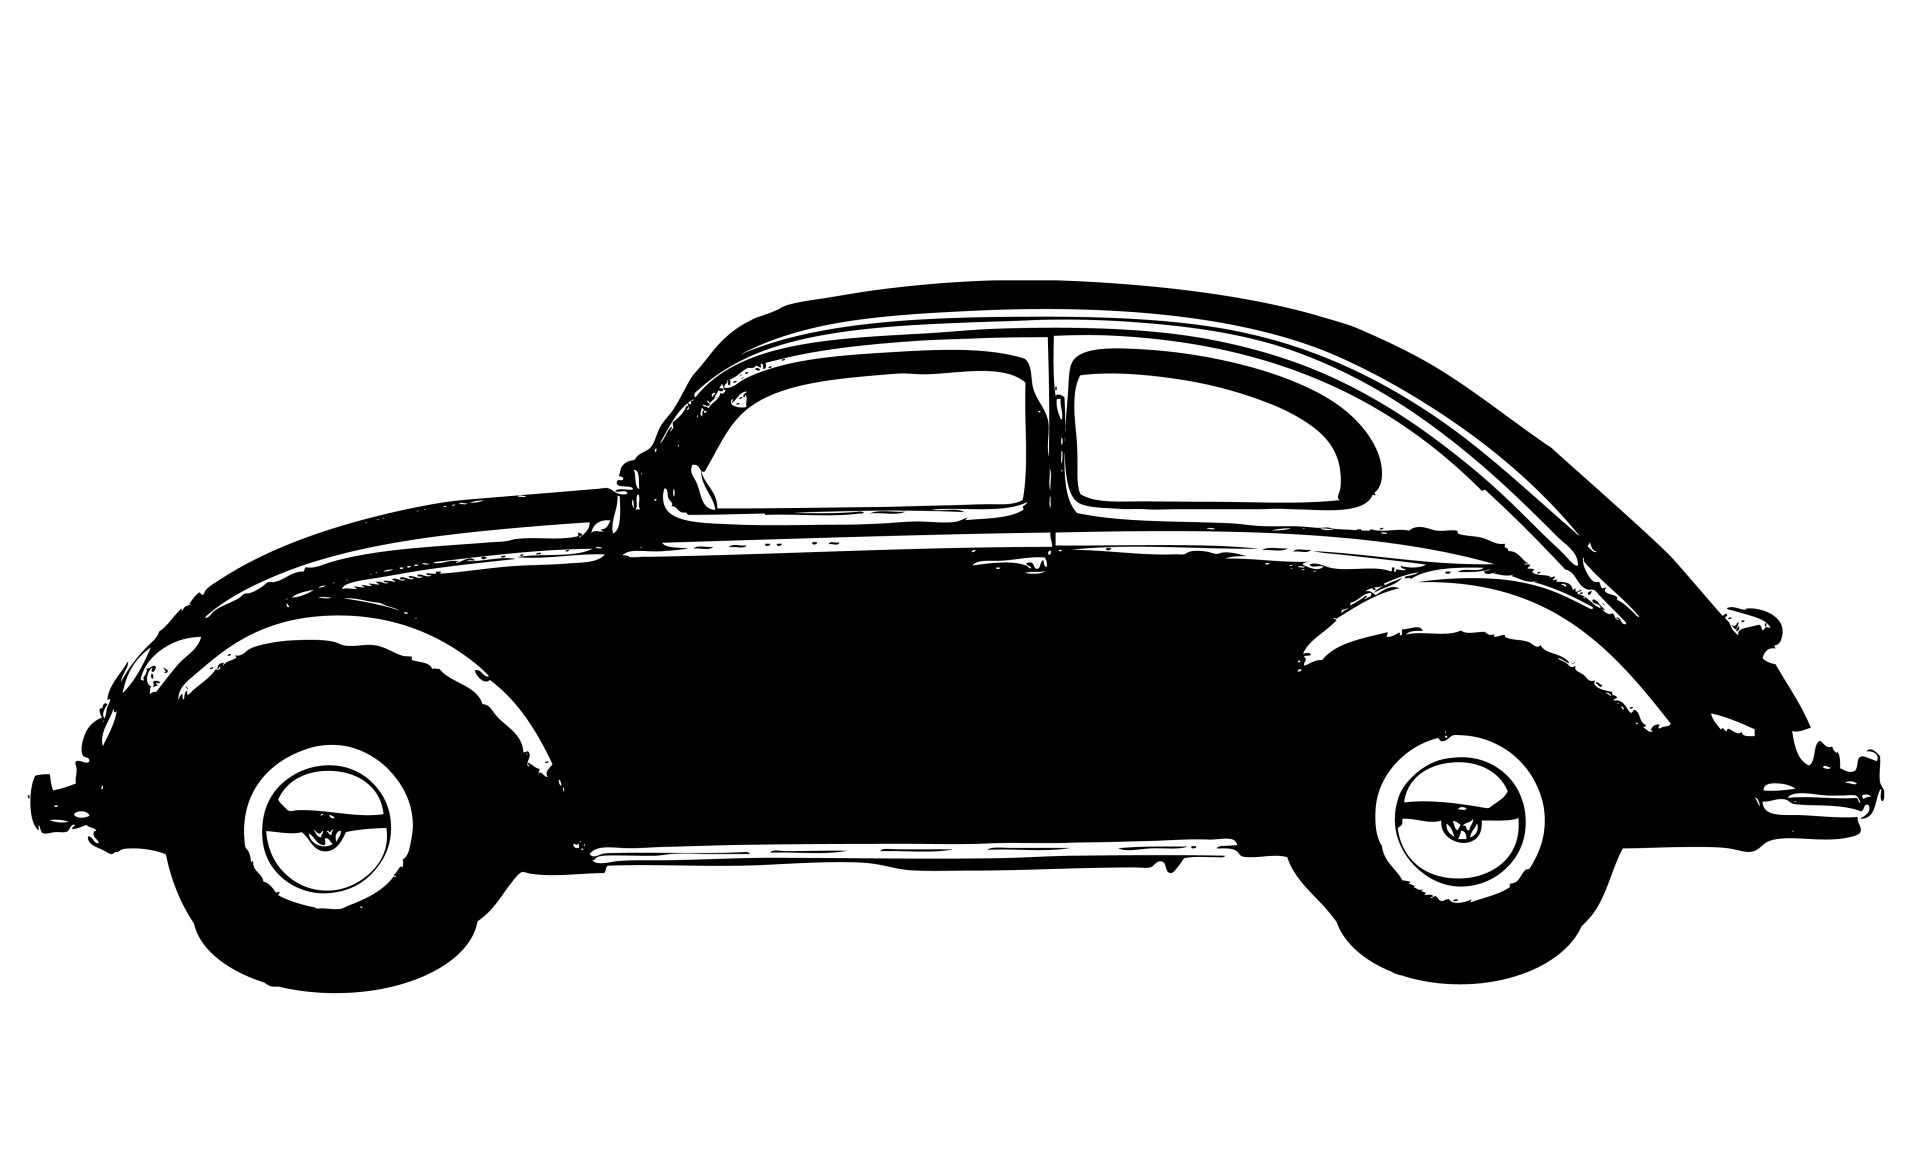 ... Vintage Car Clipart - cli - Vintage Car Clipart